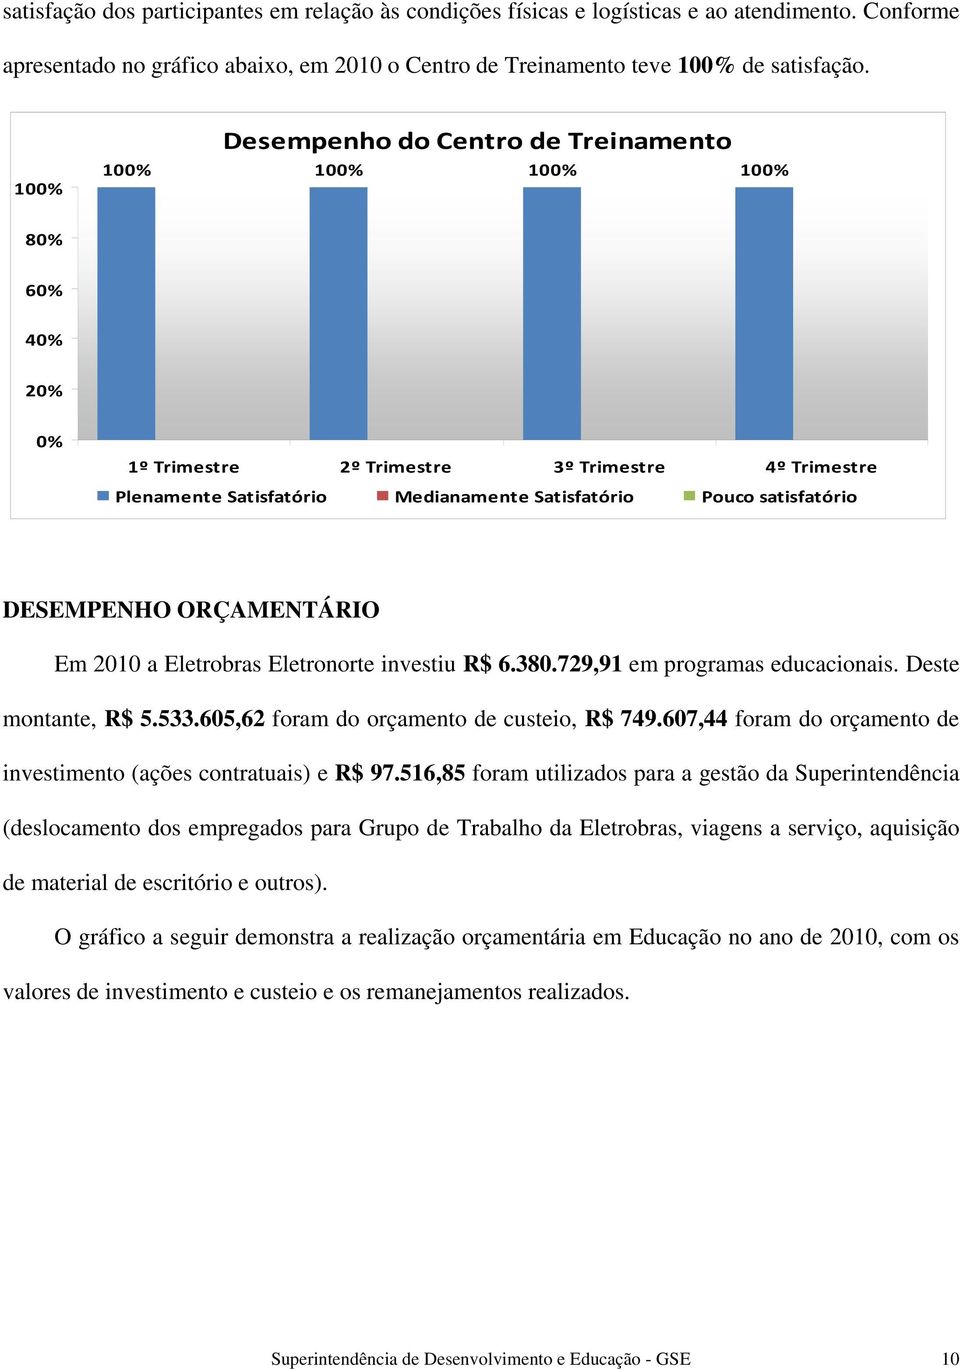 satisfatório DESEMPENHO ORÇAMENTÁRIO Em 2010 a Eletrobras Eletronorte investiu R$ 6.380.729,91 em programas educacionais. Deste montante, R$ 5.533.605,62 foram do orçamento de custeio, R$ 749.